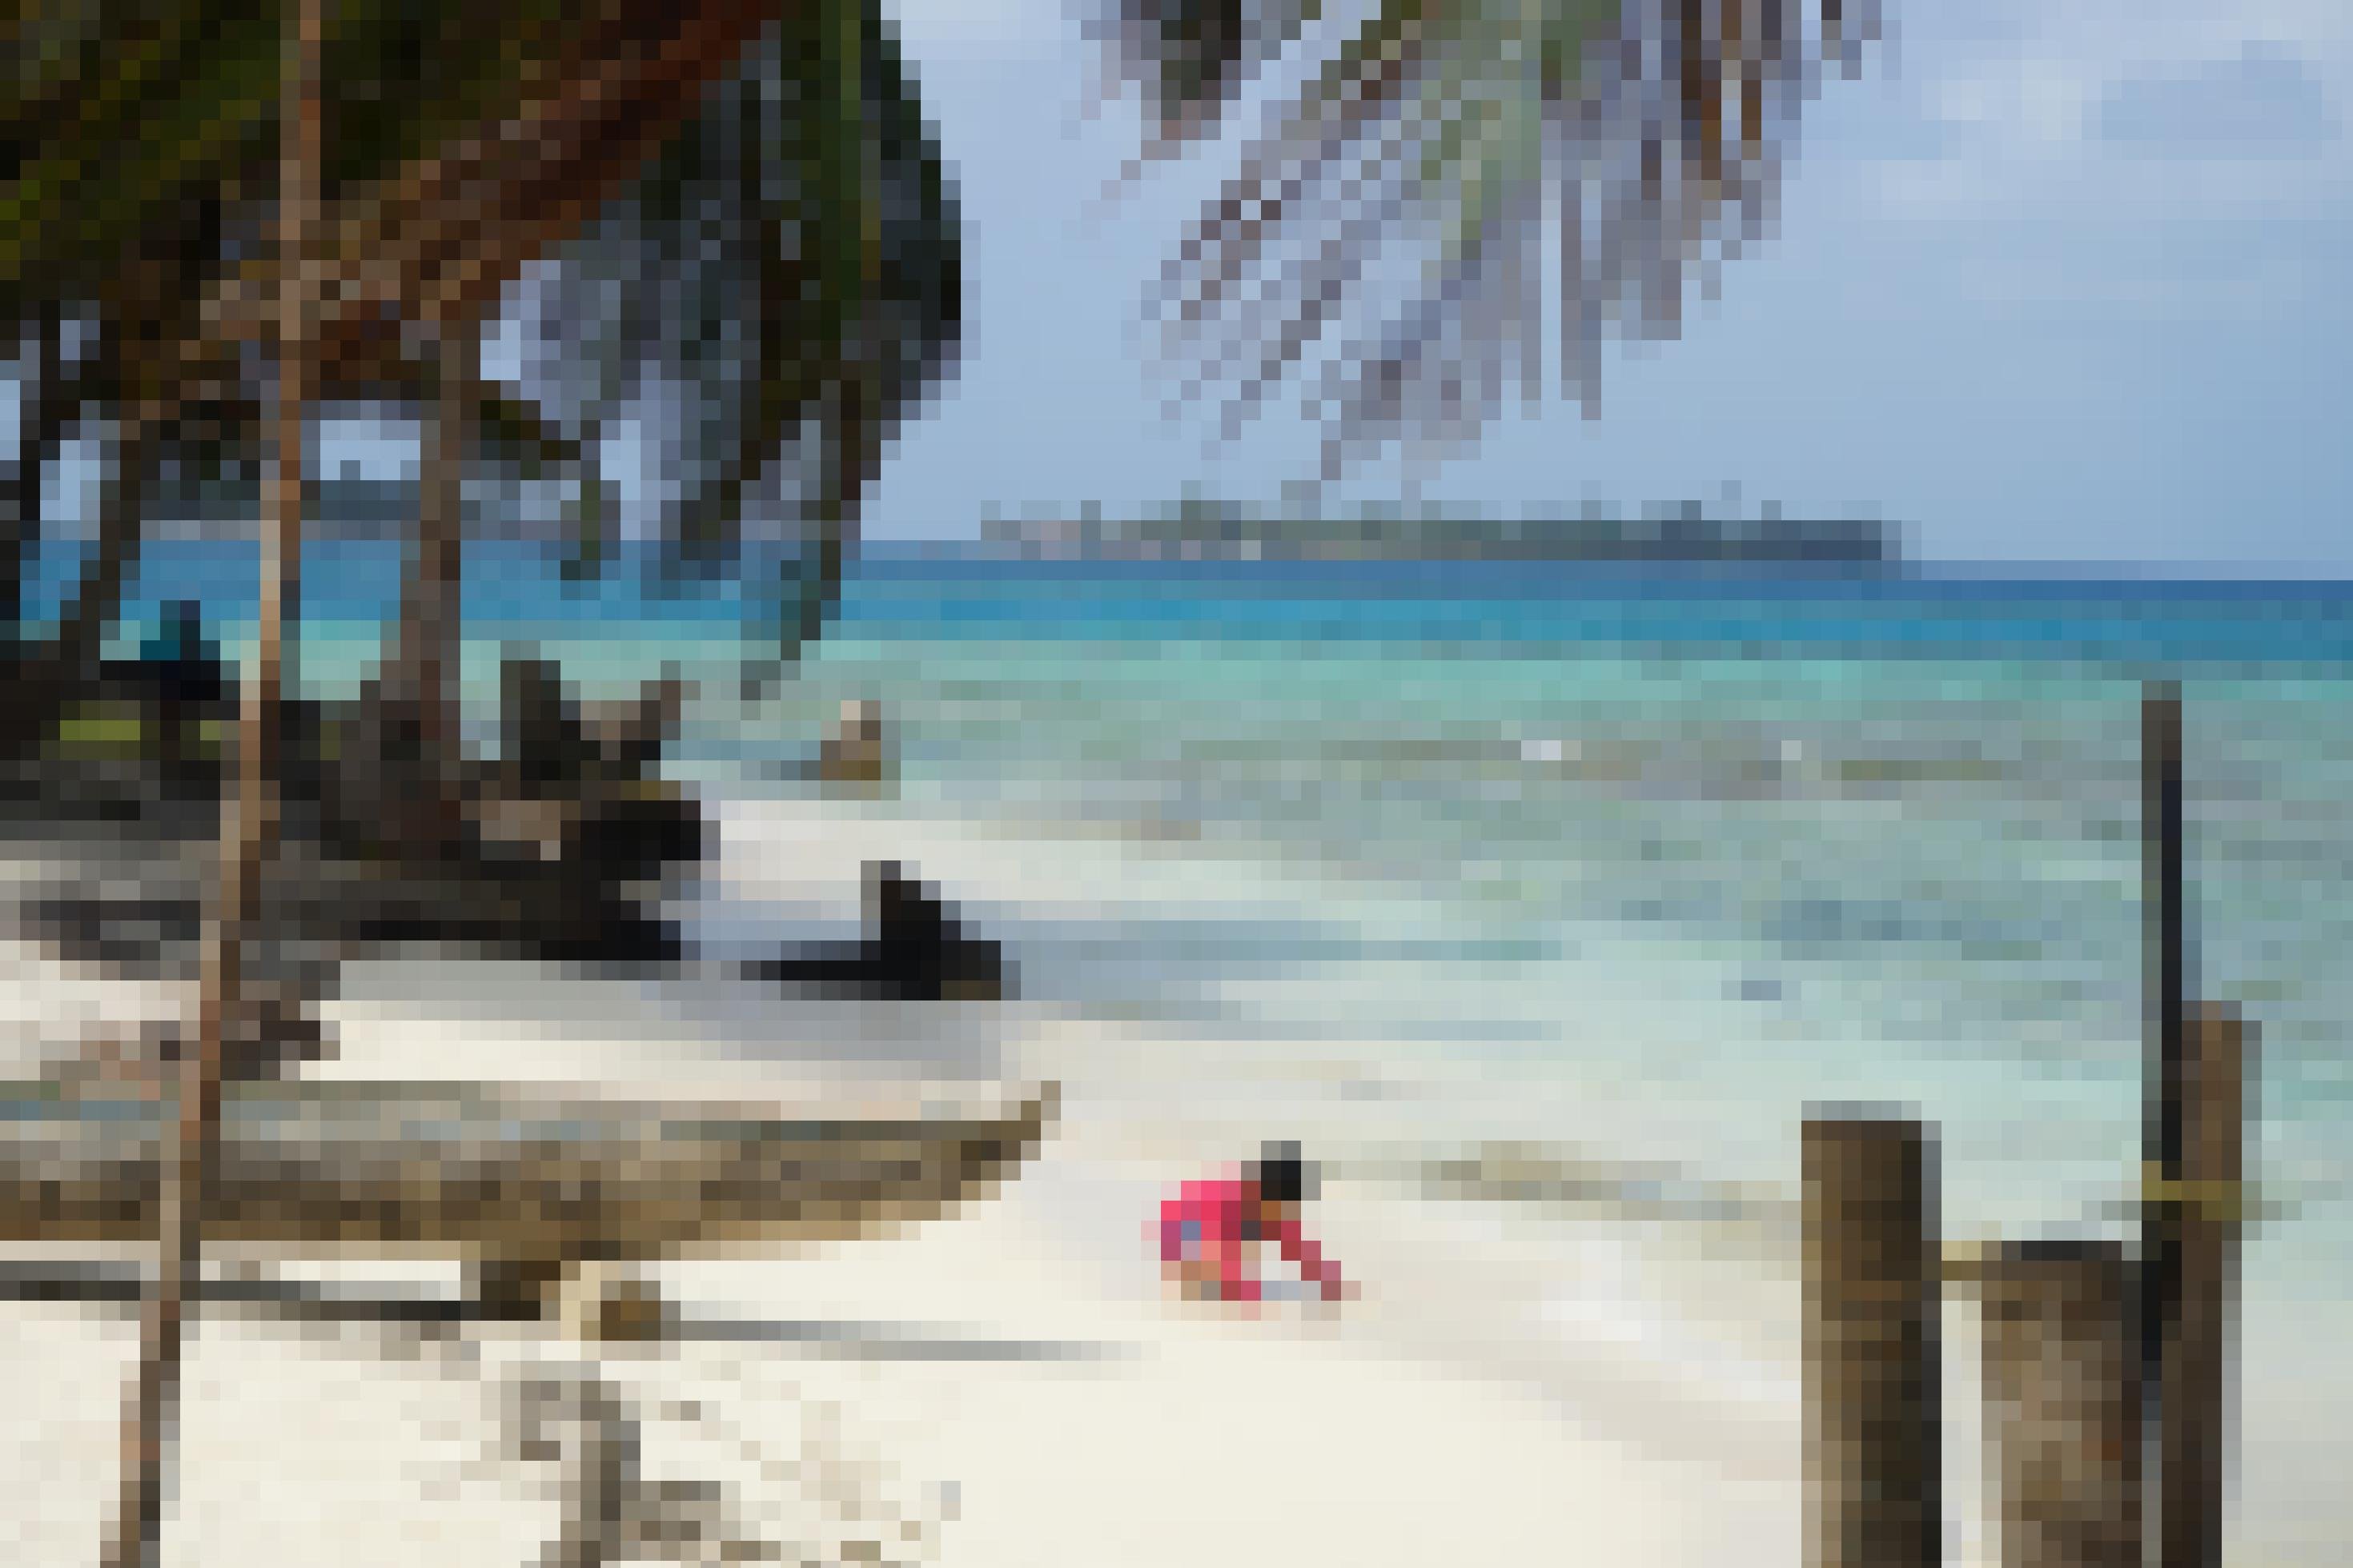 Ein heller Korallen-Sandstrand mit einem Holzboot, davor spielend ein kleiner Junge, dahinter türkisfarbenes Meer.